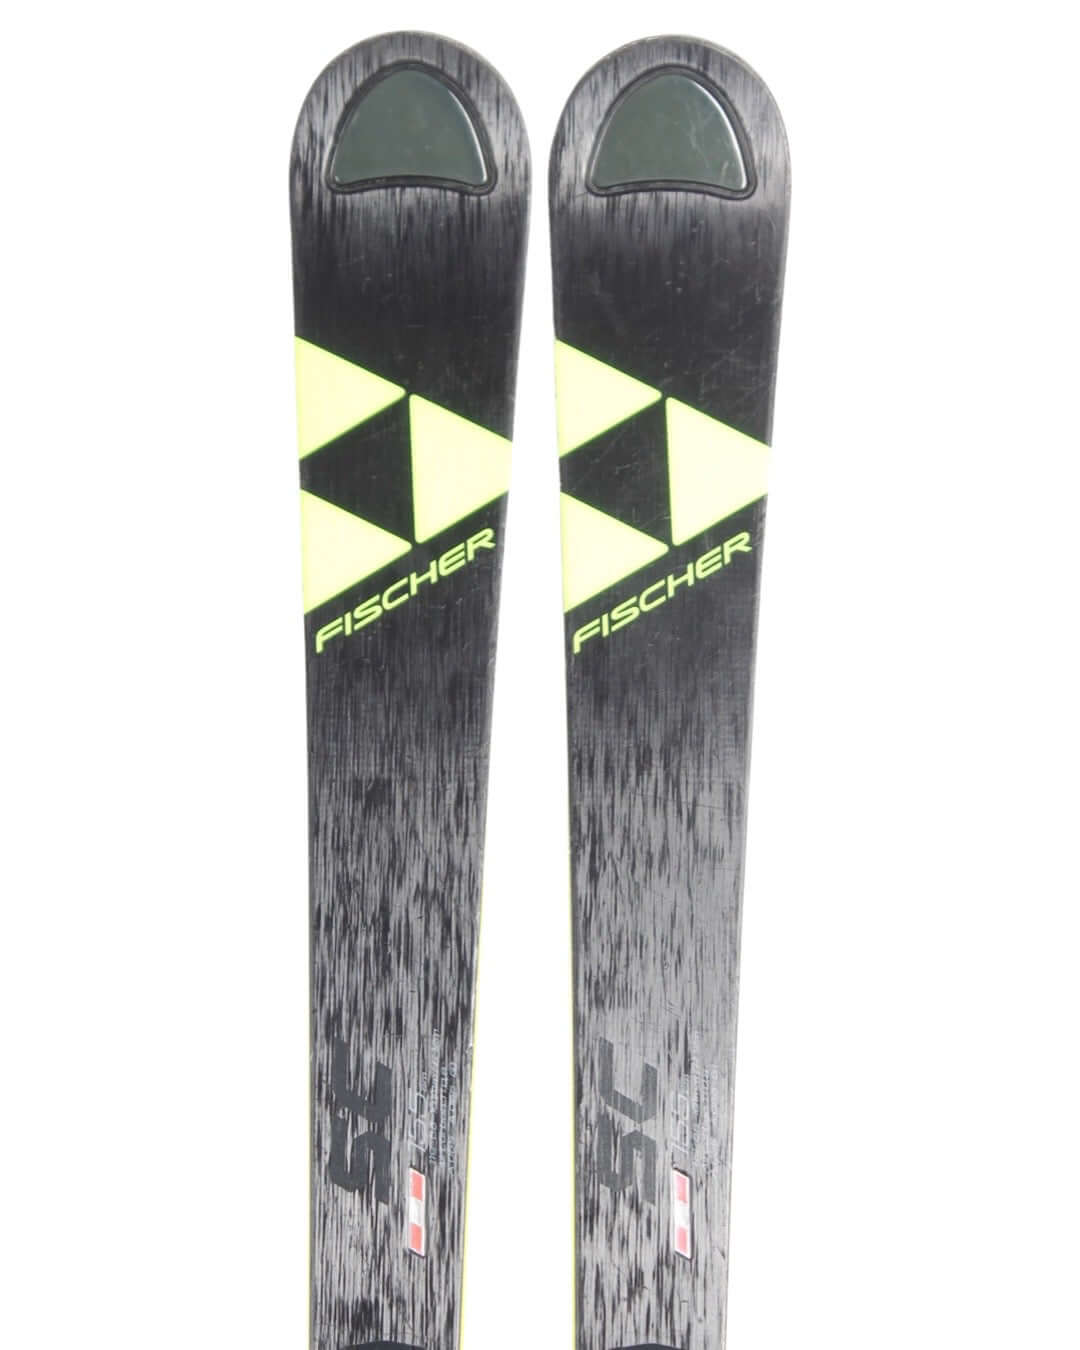 Ski - Fischer SC RC4 - 2399 kr